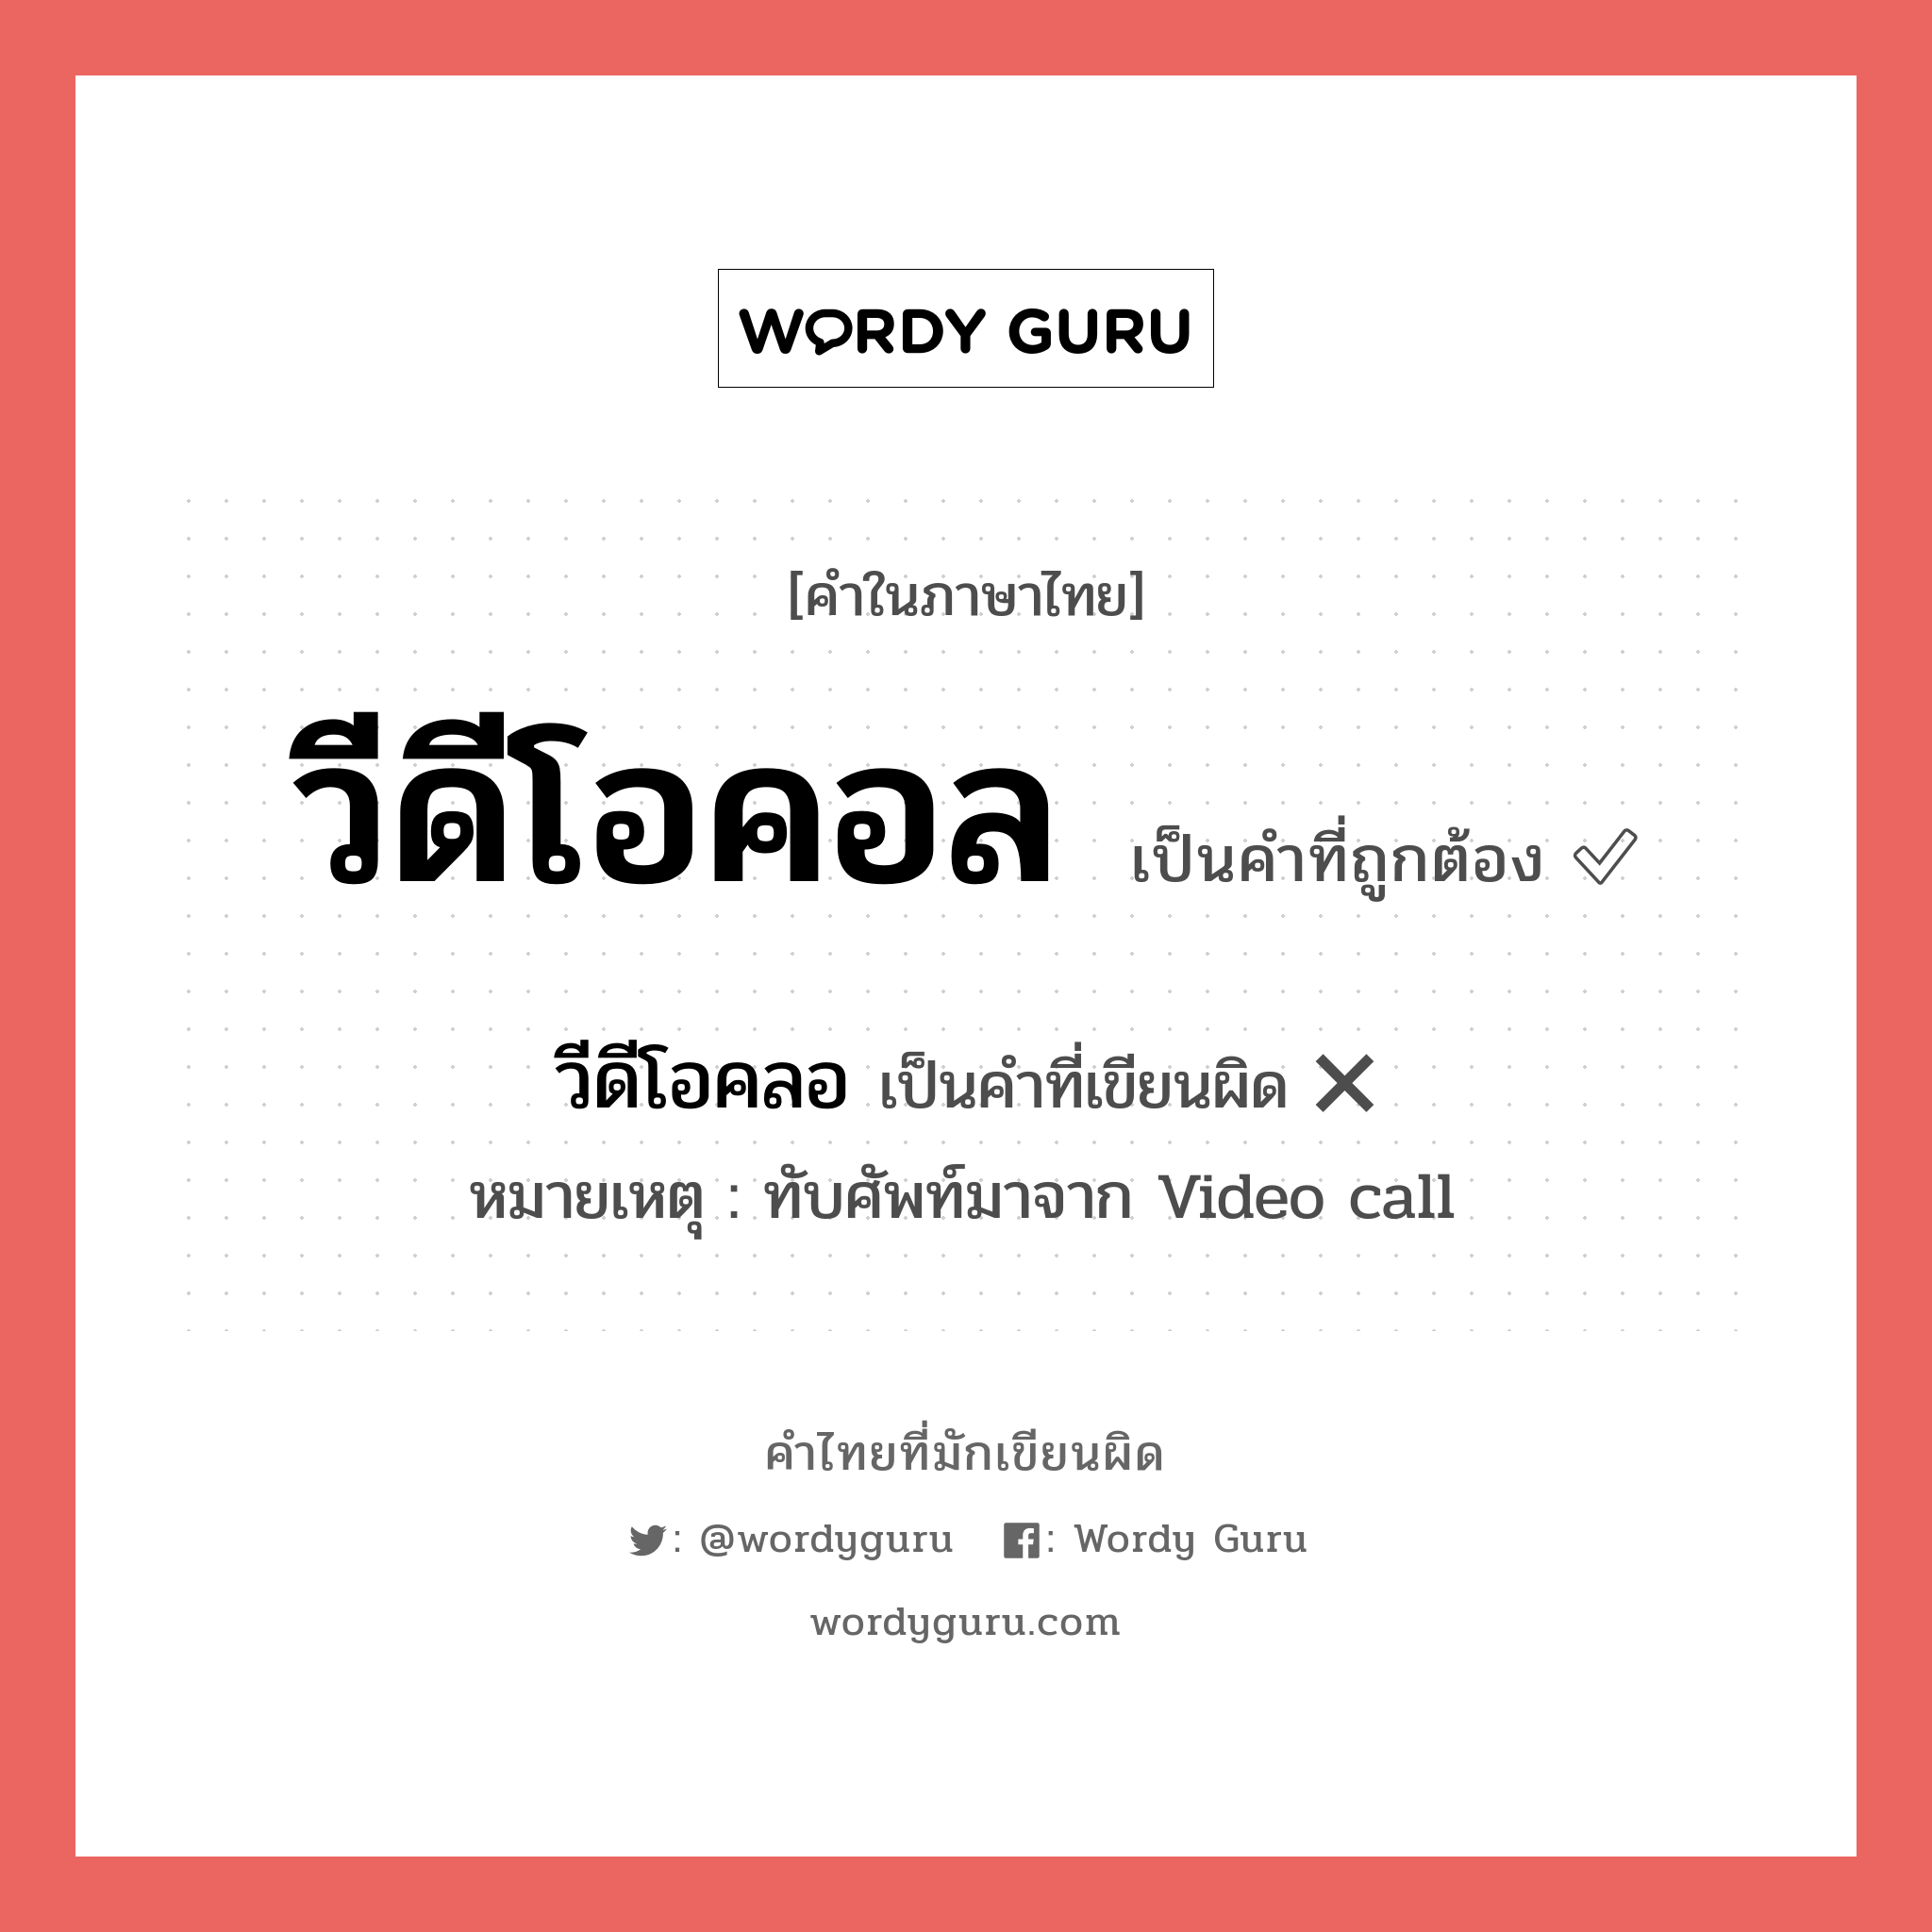 วีดีโอคลอ หรือ วีดีโอคอล คำไหนเขียนถูก?, คำในภาษาไทยที่มักเขียนผิด วีดีโอคลอ คำที่ผิด ❌ วีดีโอคอล หมายเหตุ ทับศัพท์มาจาก Video call หมวด การติดต่อสื่อสาร หมวด การติดต่อสื่อสาร